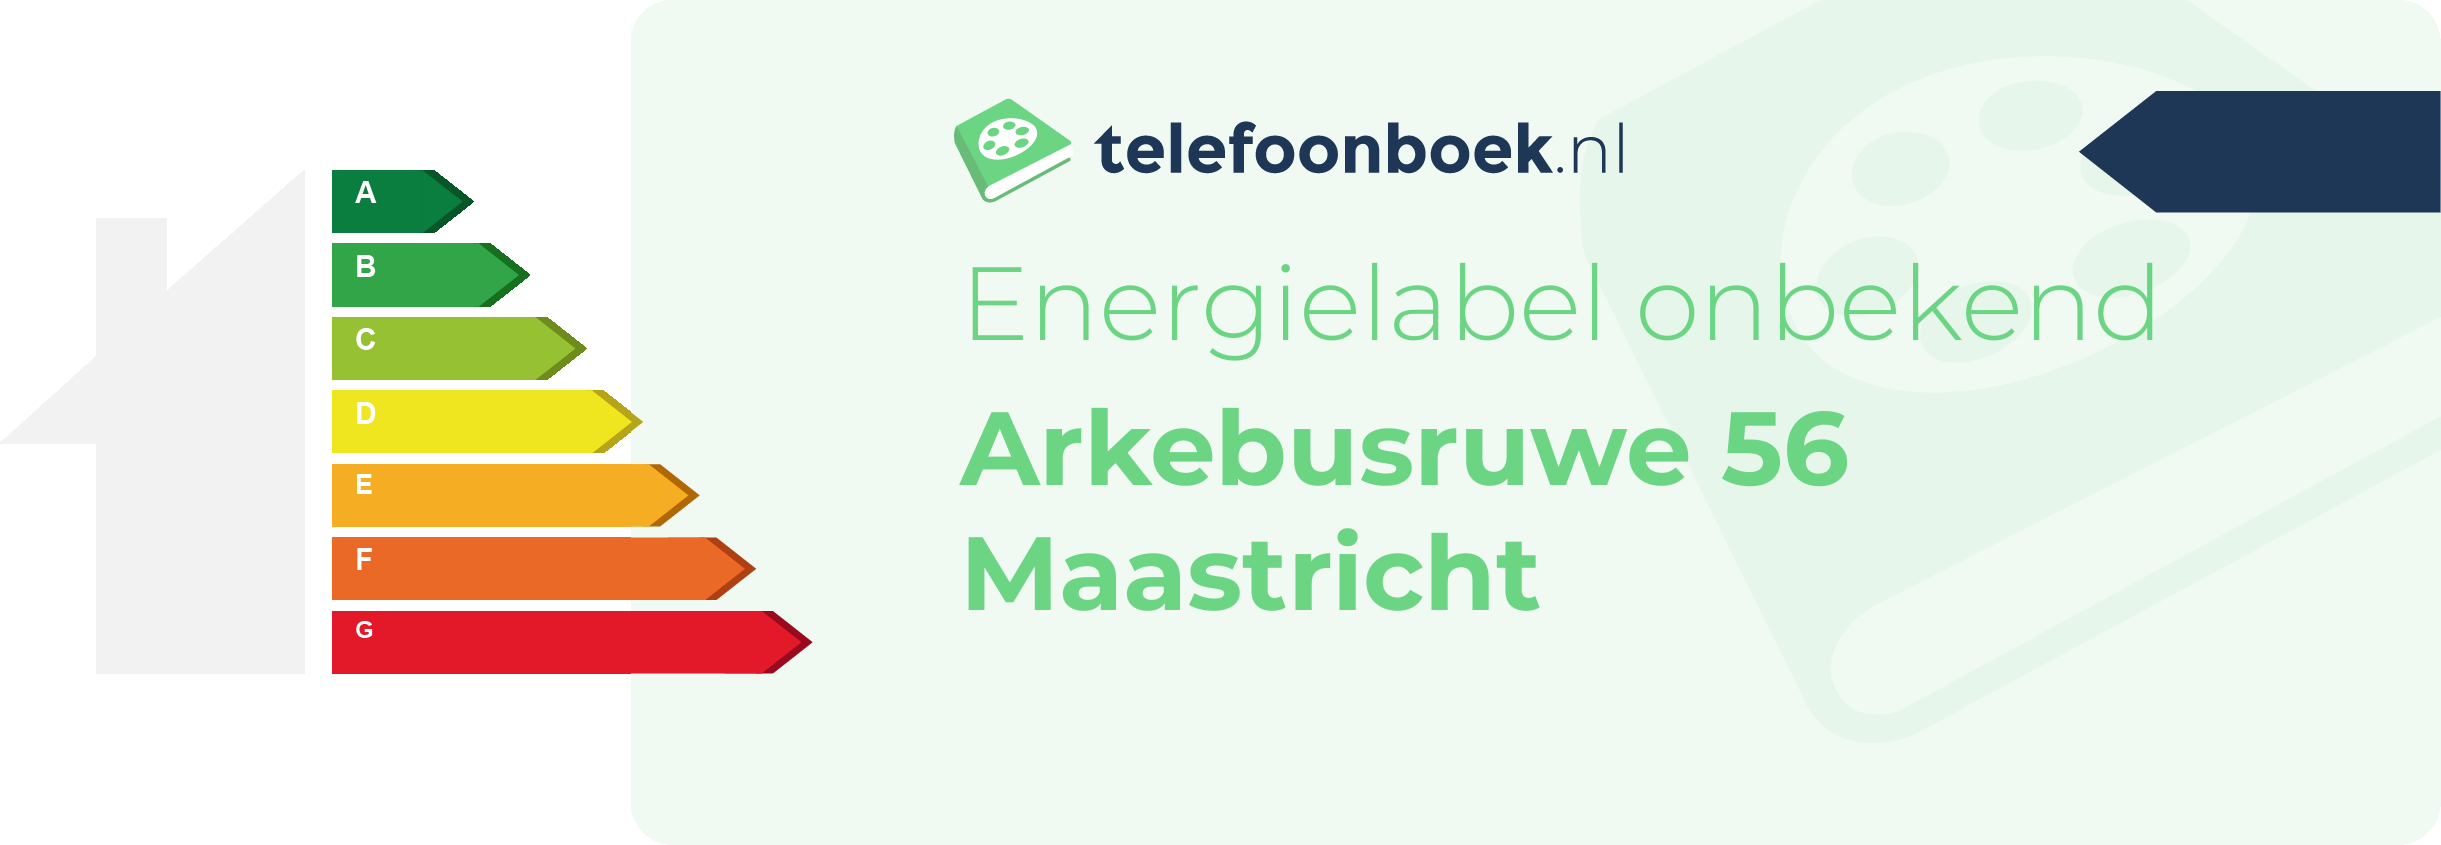 Energielabel Arkebusruwe 56 Maastricht